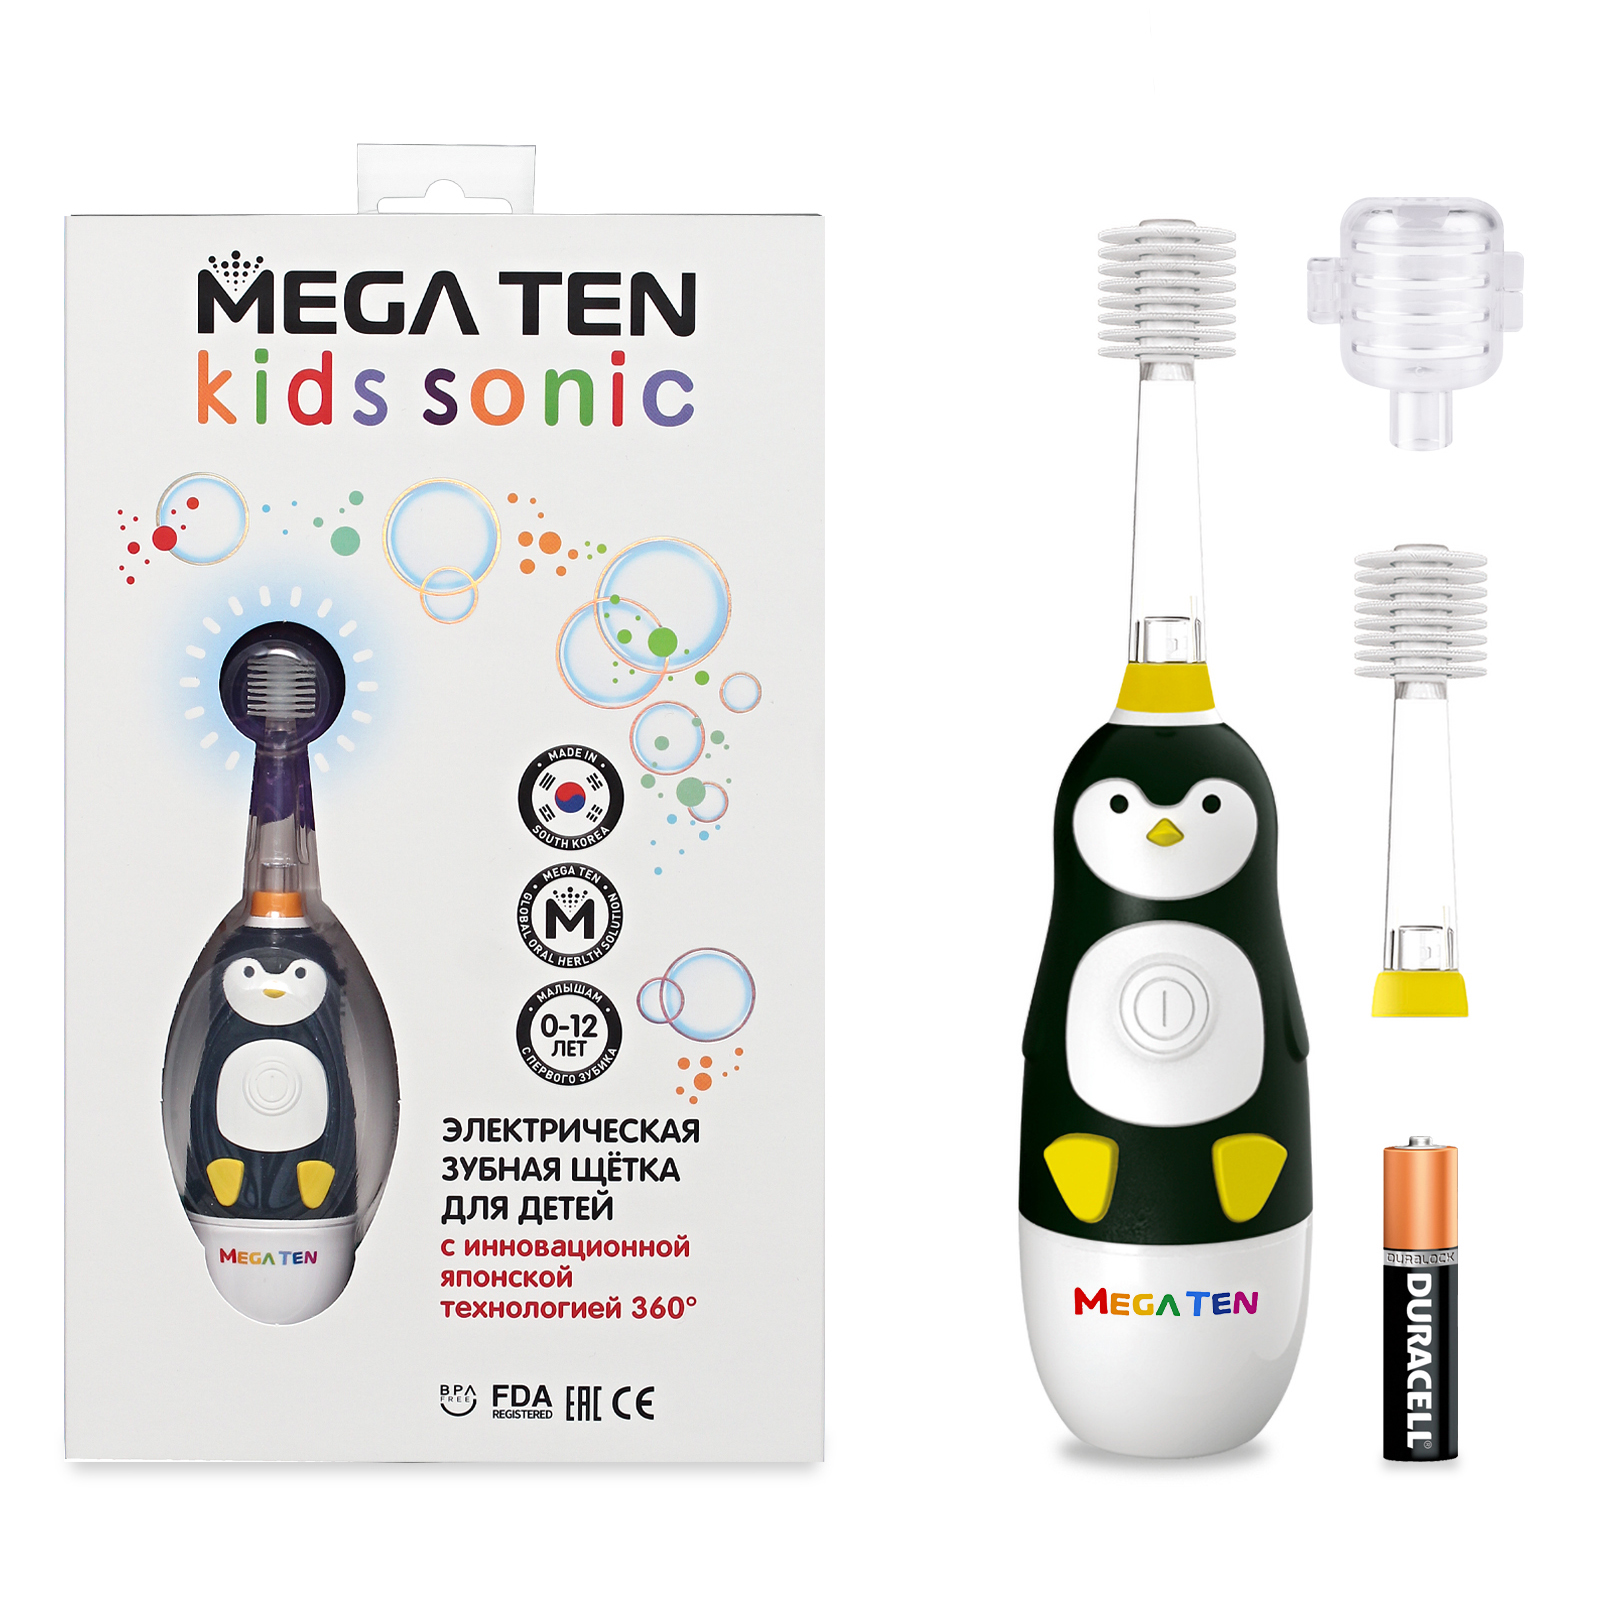 Зубная щетка MEGA TEN Пингвиненок в наборе MEGA TEN KIDS SONIC 111-MKS026 электрическая зубная щетка mega ten kids sonic котенок